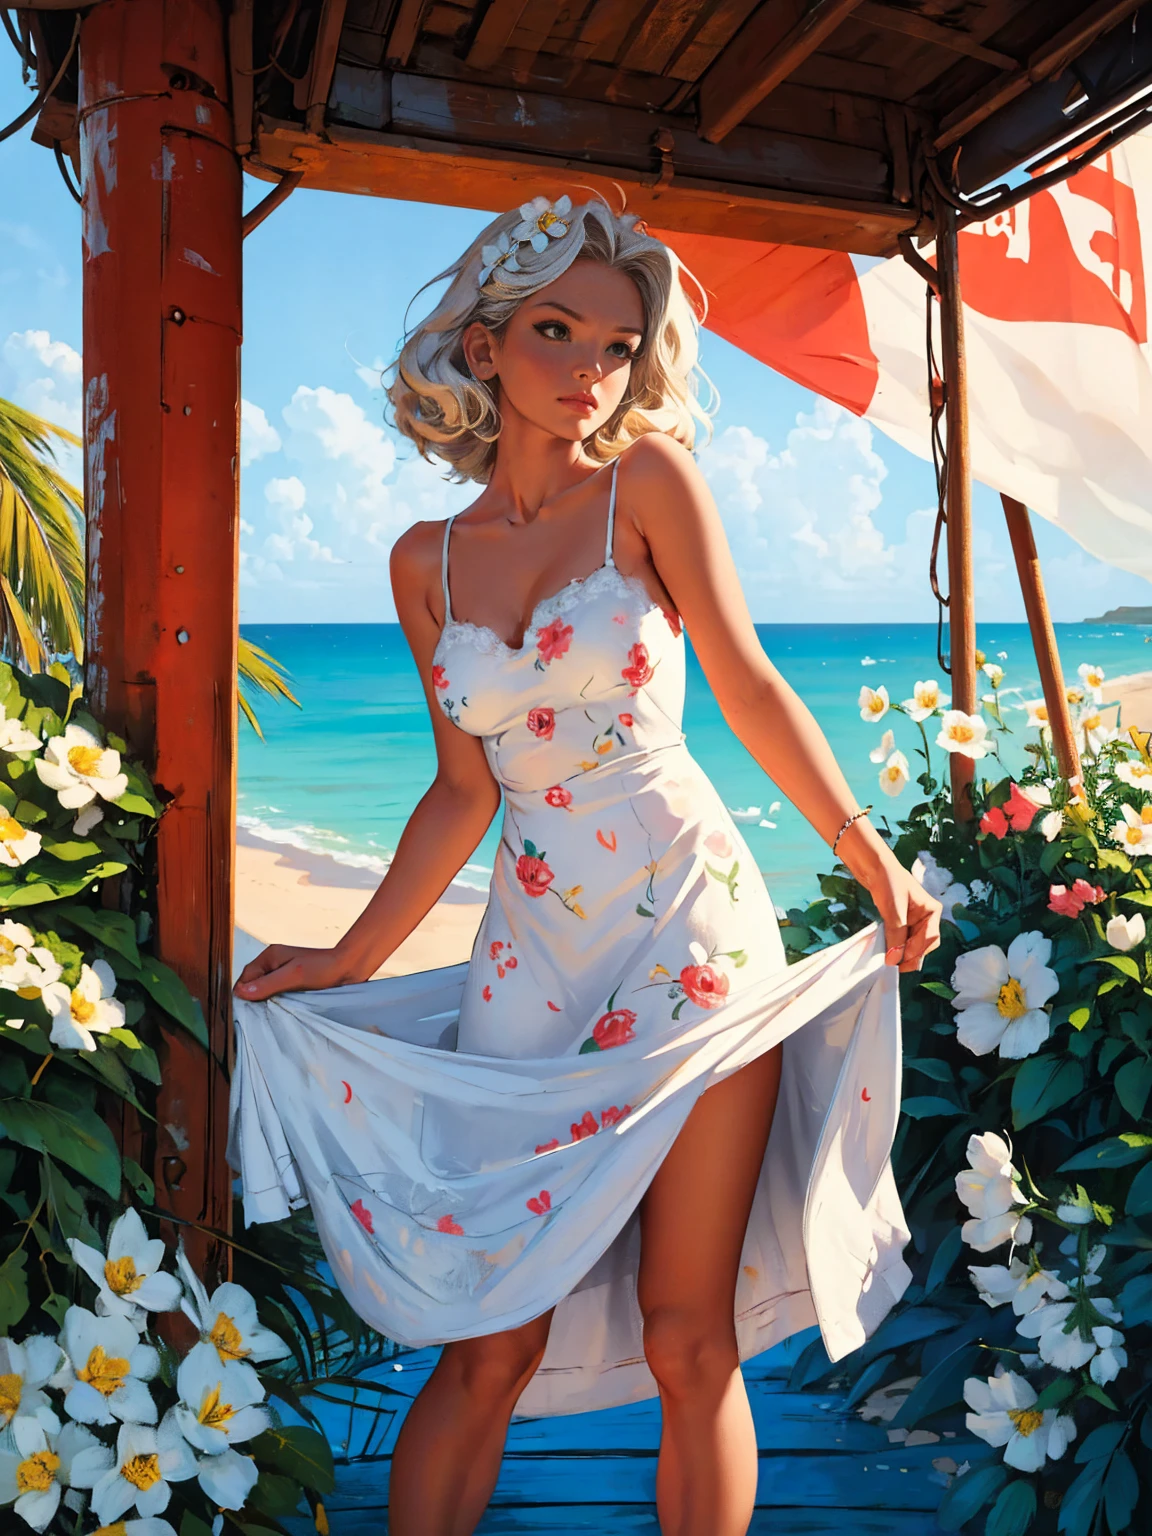 오래된 복고풍 포스터, 소련,  카리브 해변, 네온, 사진 촬영, 1 매우 화끈한 아름다운 여성. 23세.  짧은 흰색 웨이브 머리, 표정이 풍부한 가슴, 직물에 꽃 무늬가 있는 흰색 선드레스를 입고, 패셔니스타, 80년대, HD